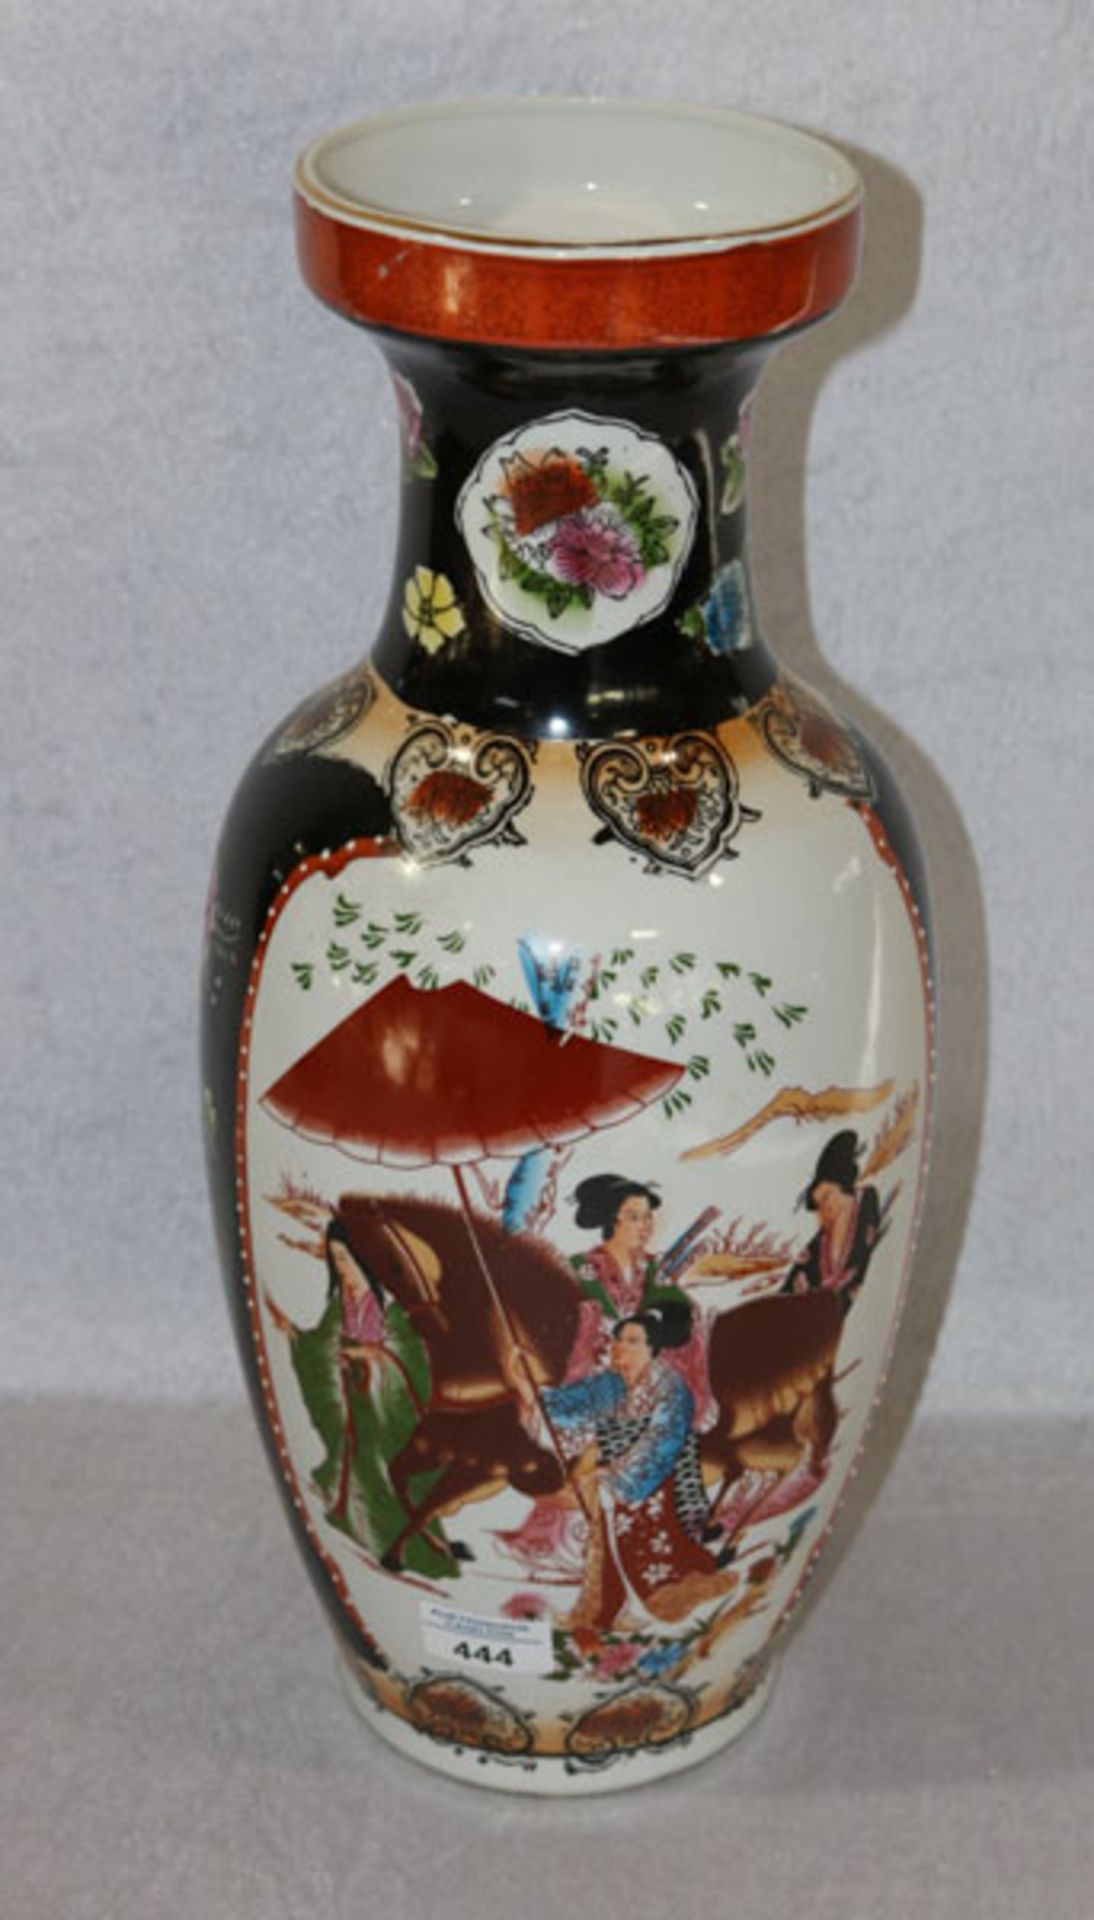 Porzellan Blumenvase mit asiatischem Dekor, H 46 cm, D 21 cm, Gebrauchsspuren